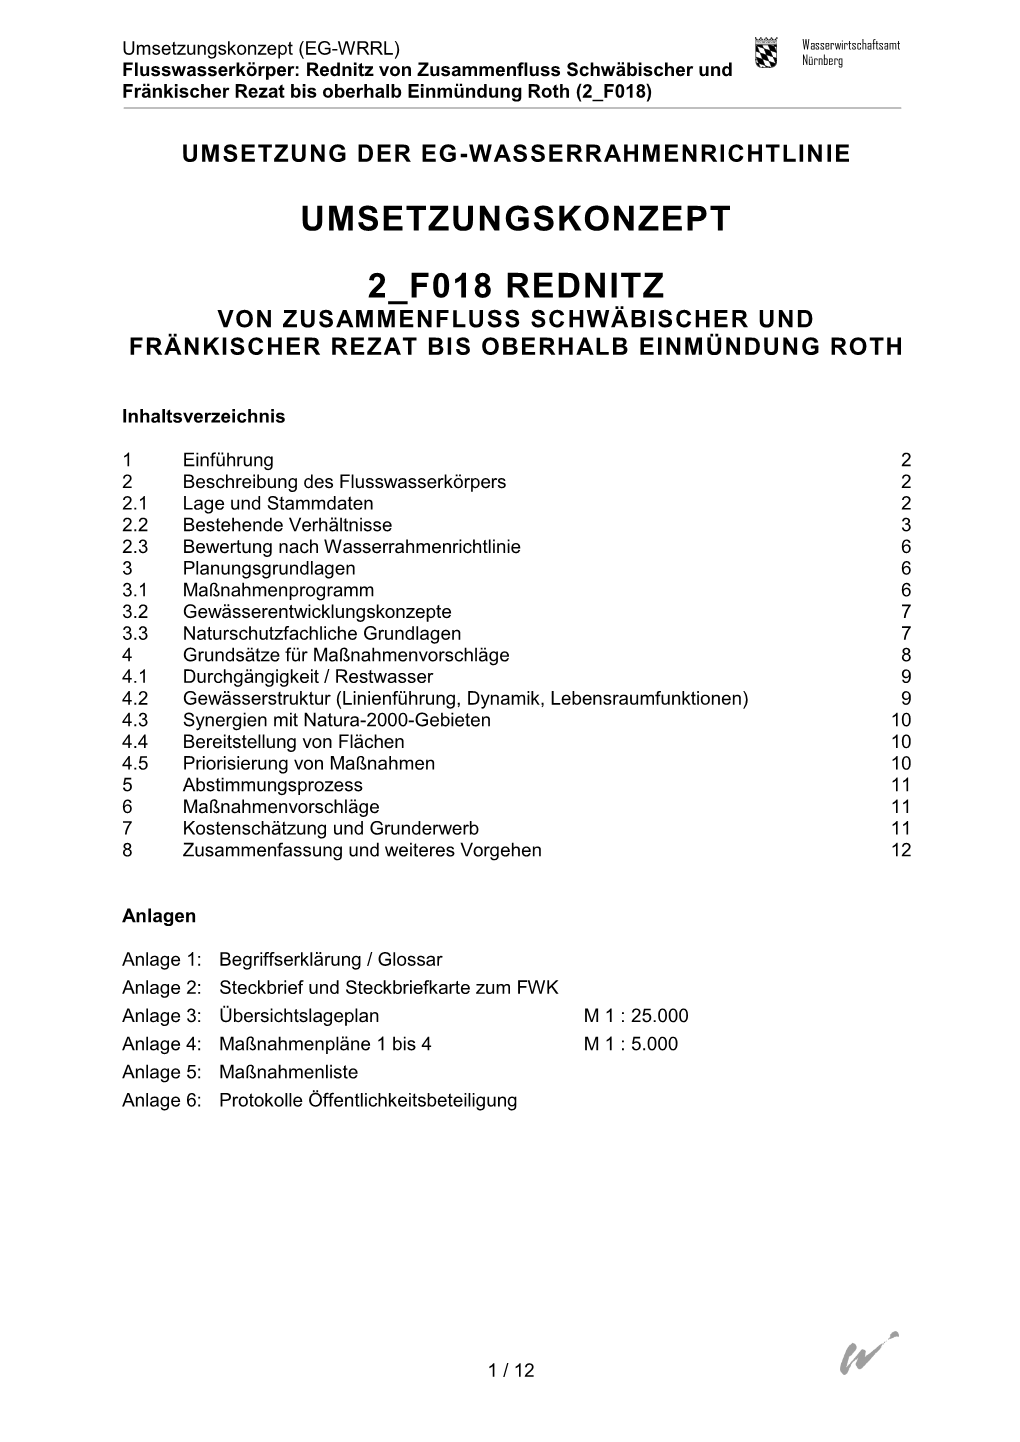 Umsetzungskonzept 2 F018 Rednitz